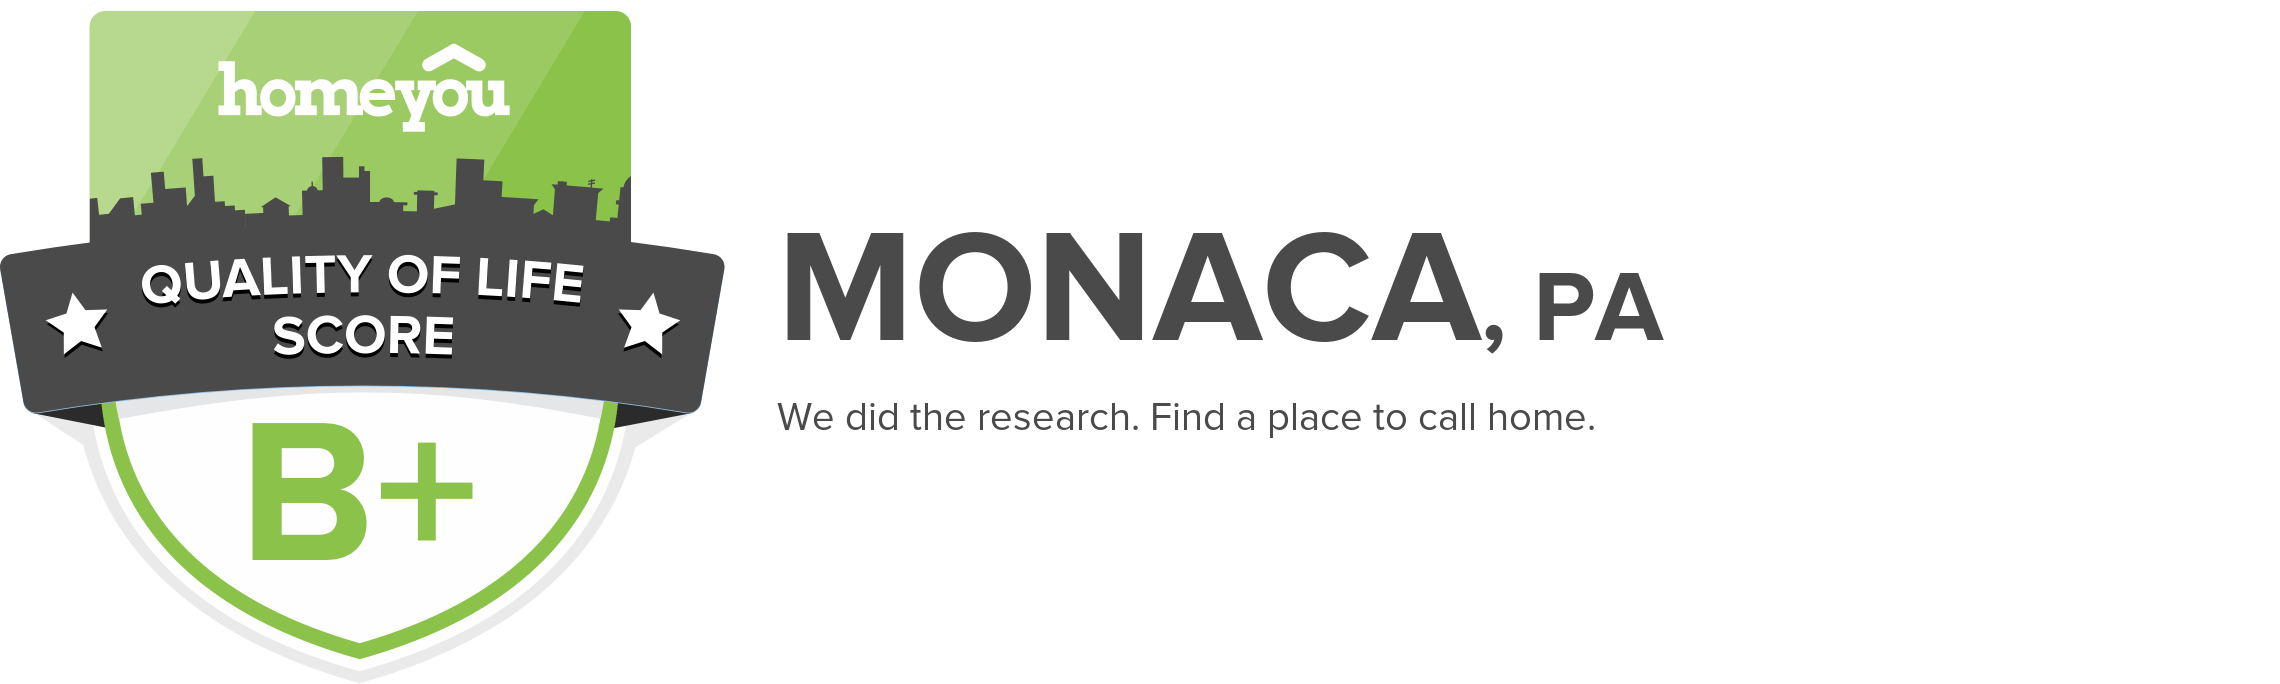 Monaca, PA